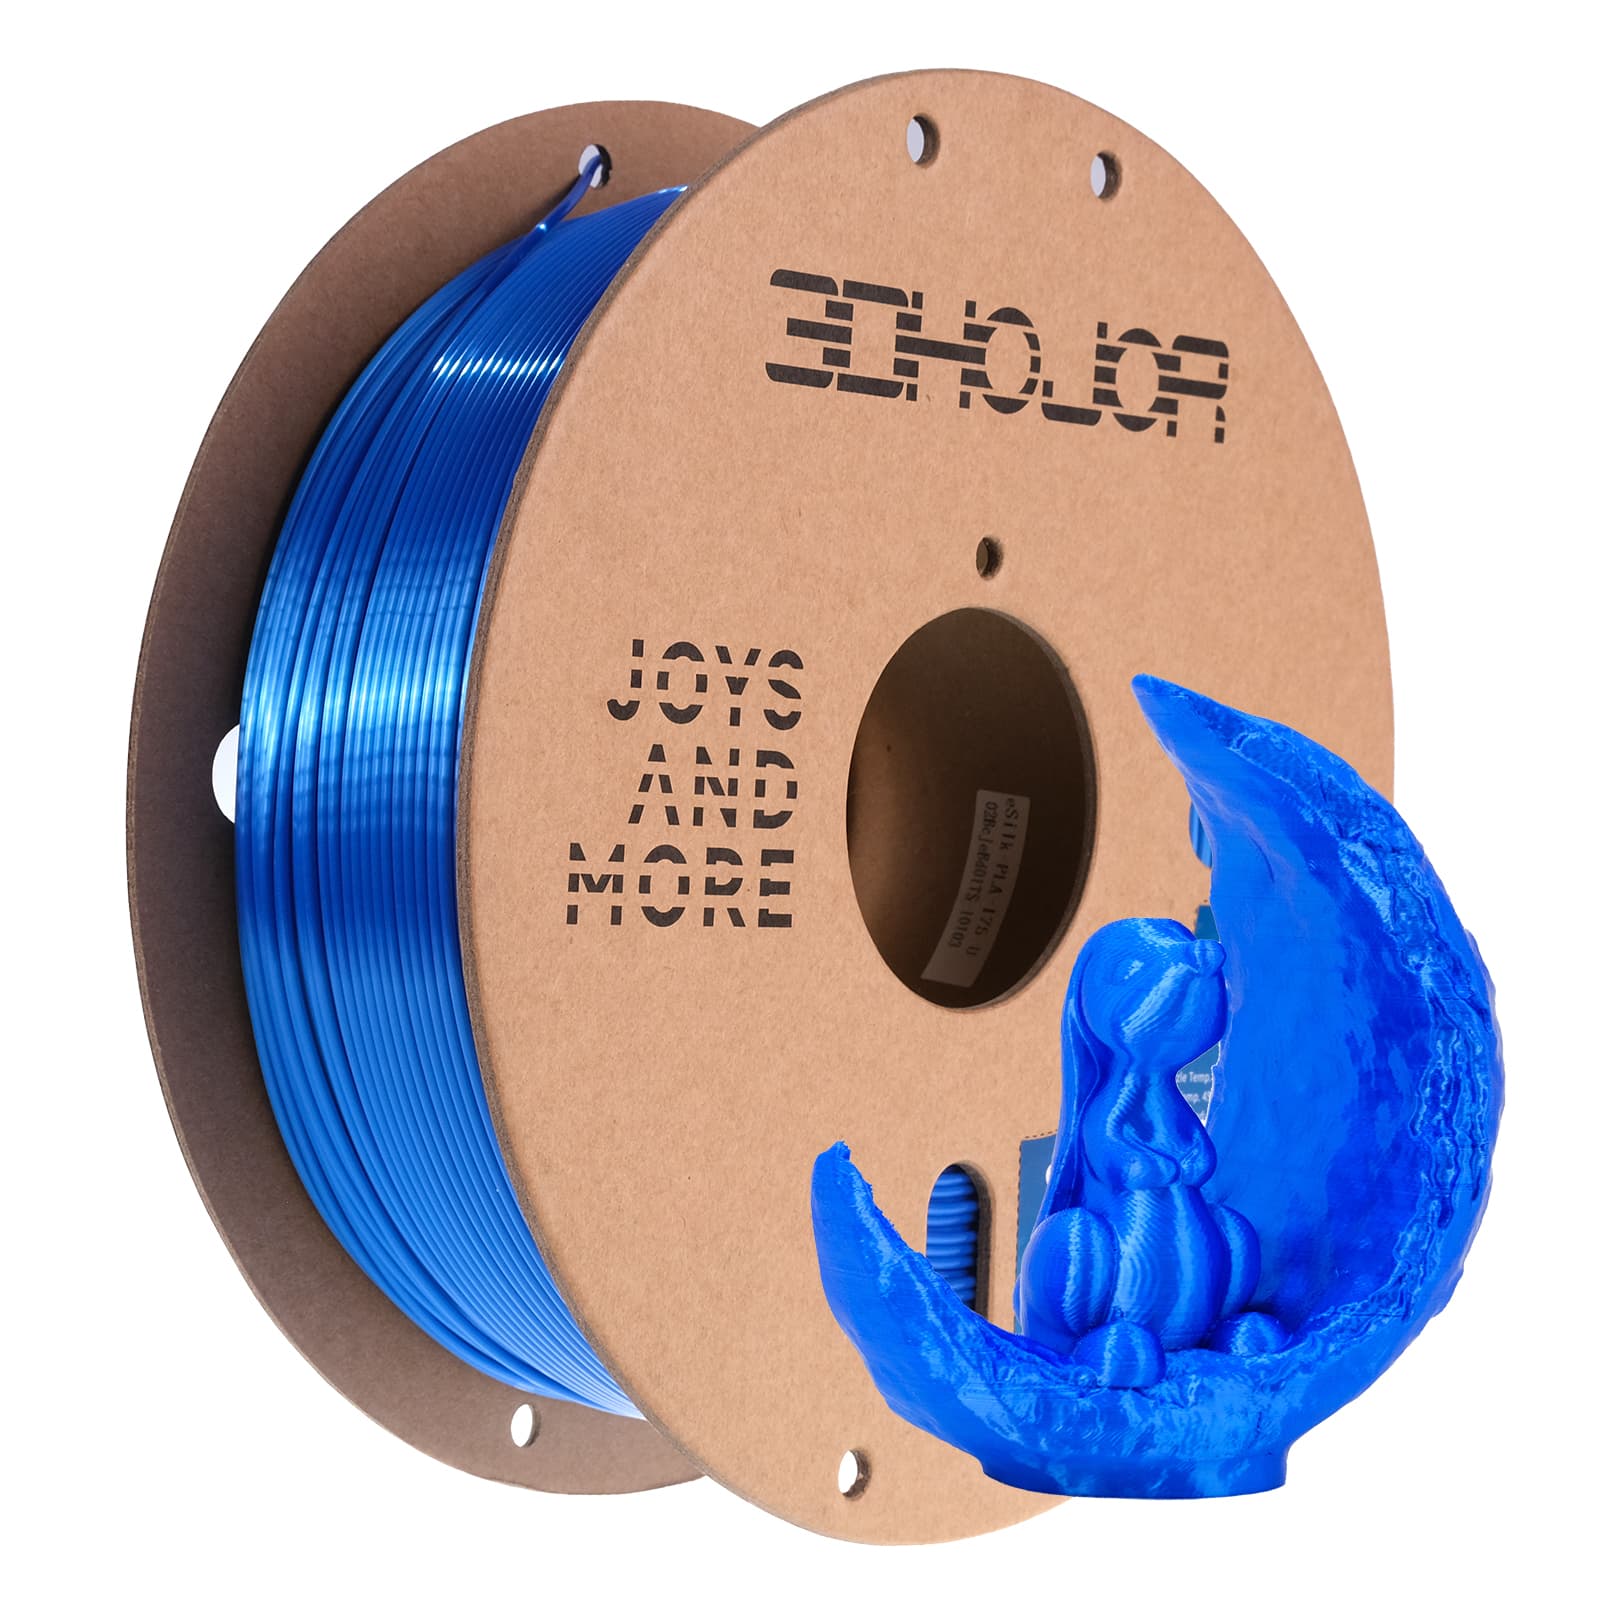 Basics SILK PLA 3D Printer Filament, 1.75 millimeters, 1 kg Spool  (2.2 lbs), Blue